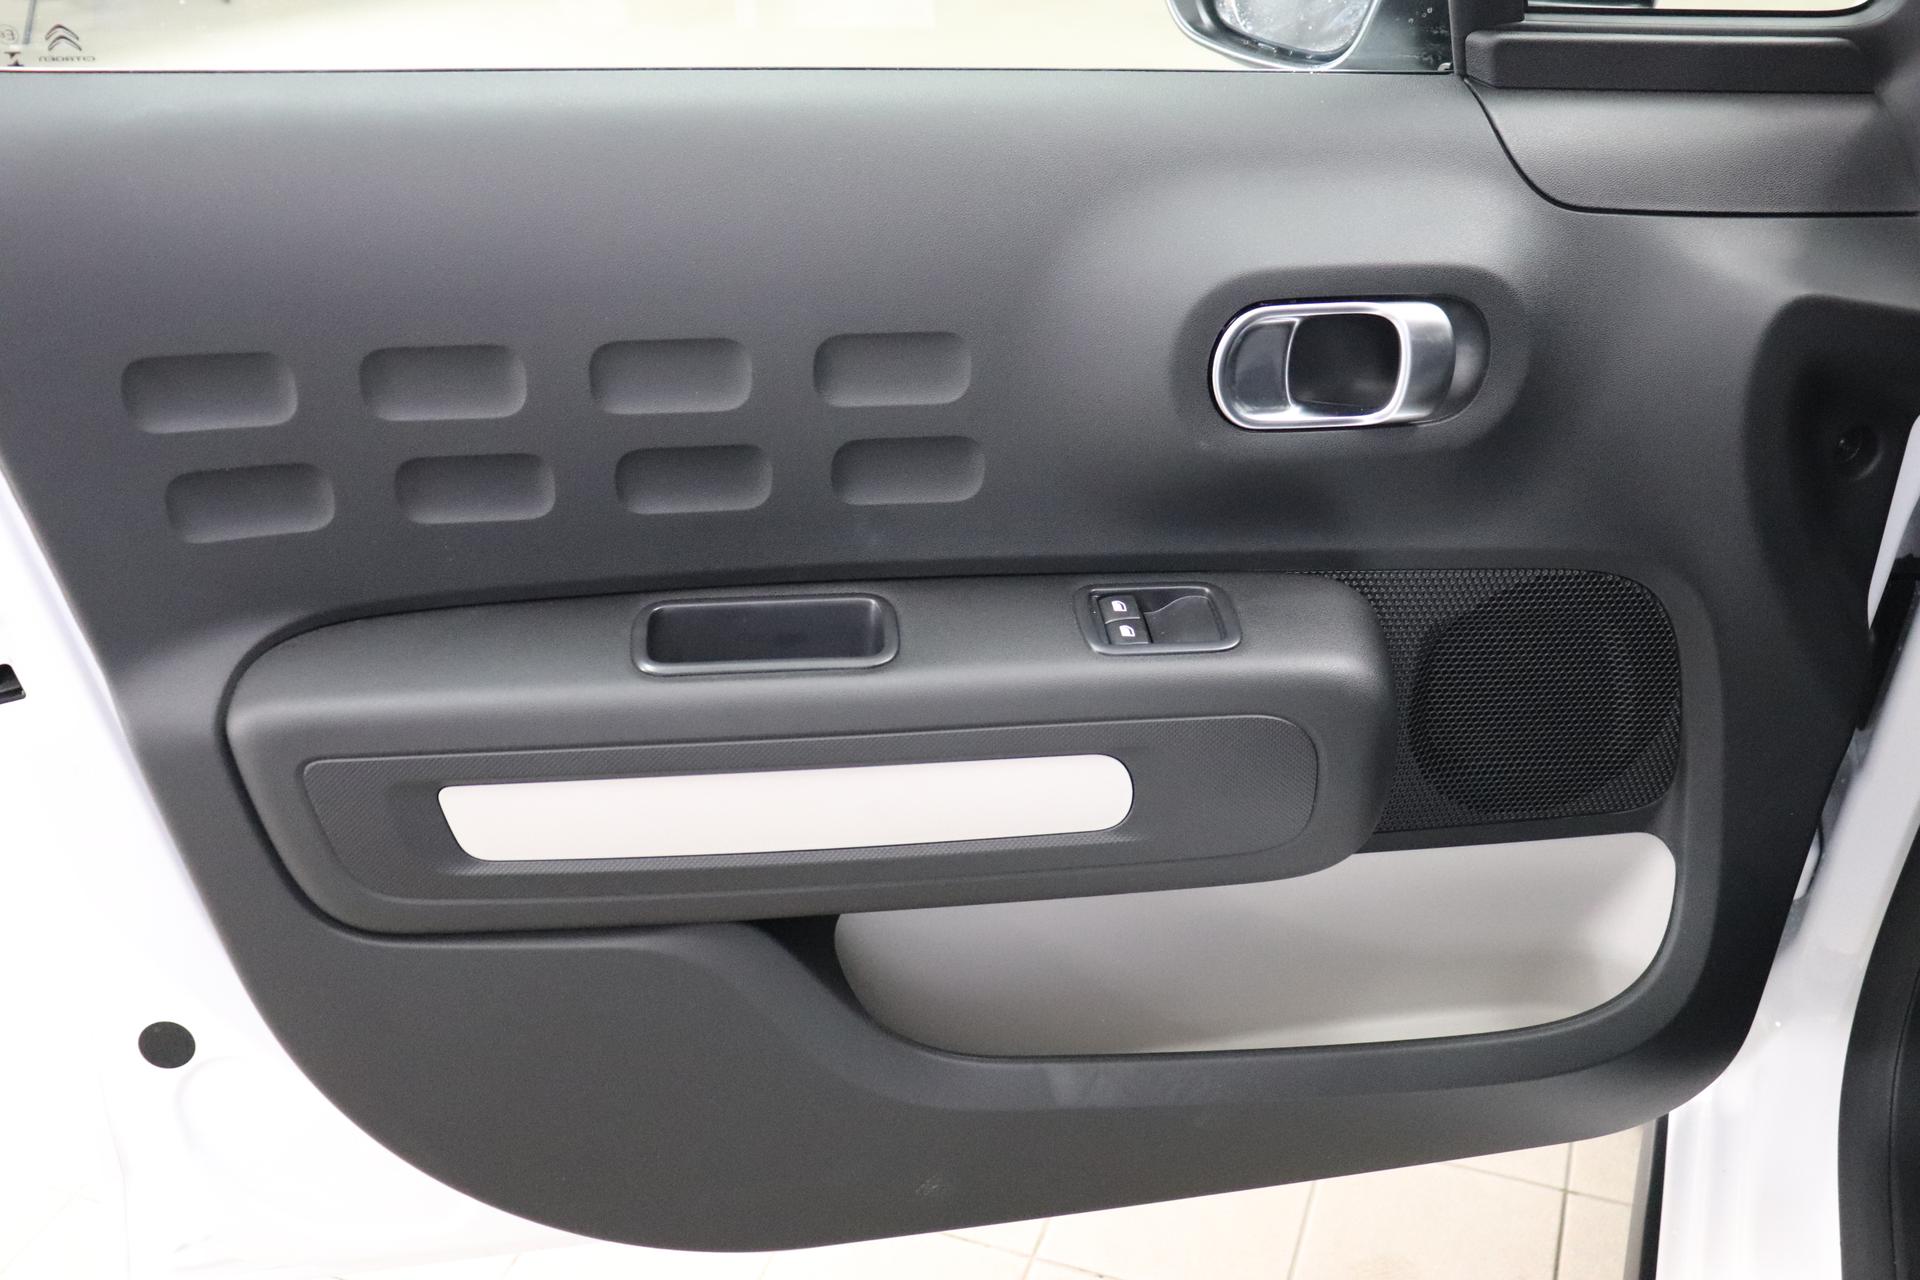 Citroën C3 FEEL PACK 1,2 8V Radio mit 7-HD-Touchscreen, USB, Tempomat,  Nebelscheinwerfer, Außenspiegel elektrisch verstellbar, Klimaautomatik,  Apple Carplay / Android Auto, 16 Zoll Felgen uvm. günstiger kaufen